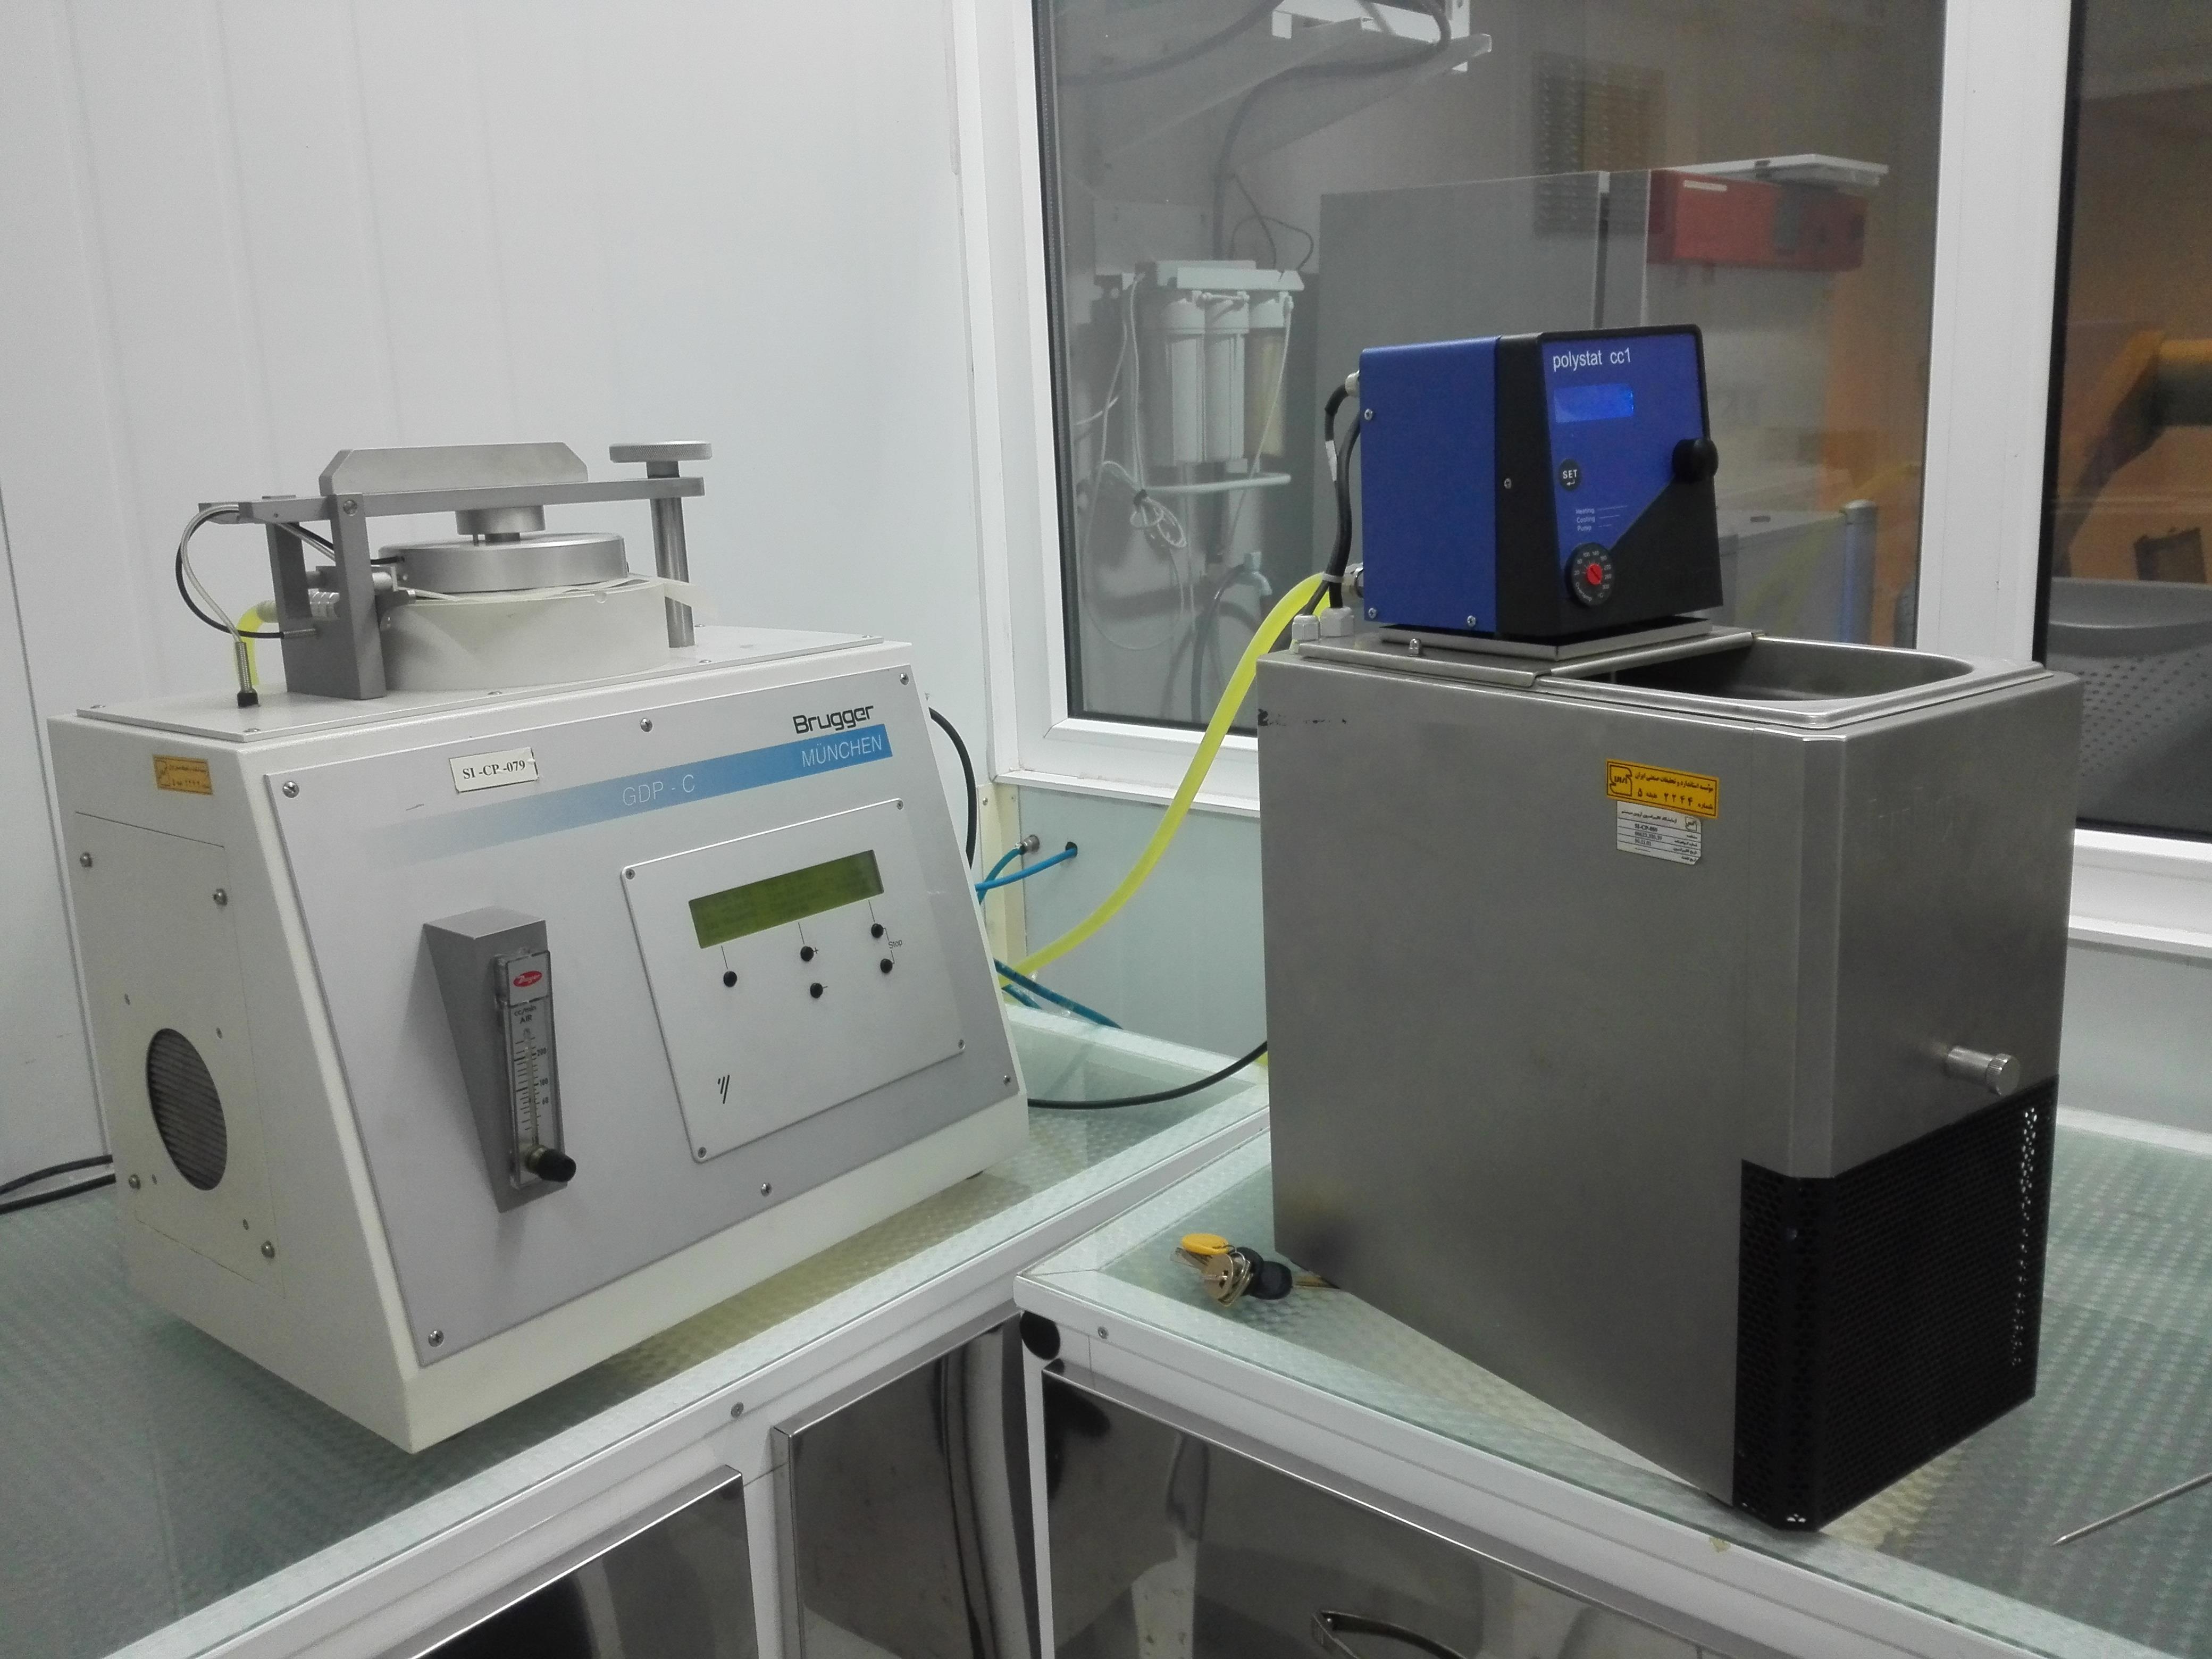 اتمام طرح پژوهشی بررسی و تعیین فاکتور نفوذپذیری گاز اکسیژن در فیلم های چند لایه پلیمری با استفاده از دستگاه عبور گاز در